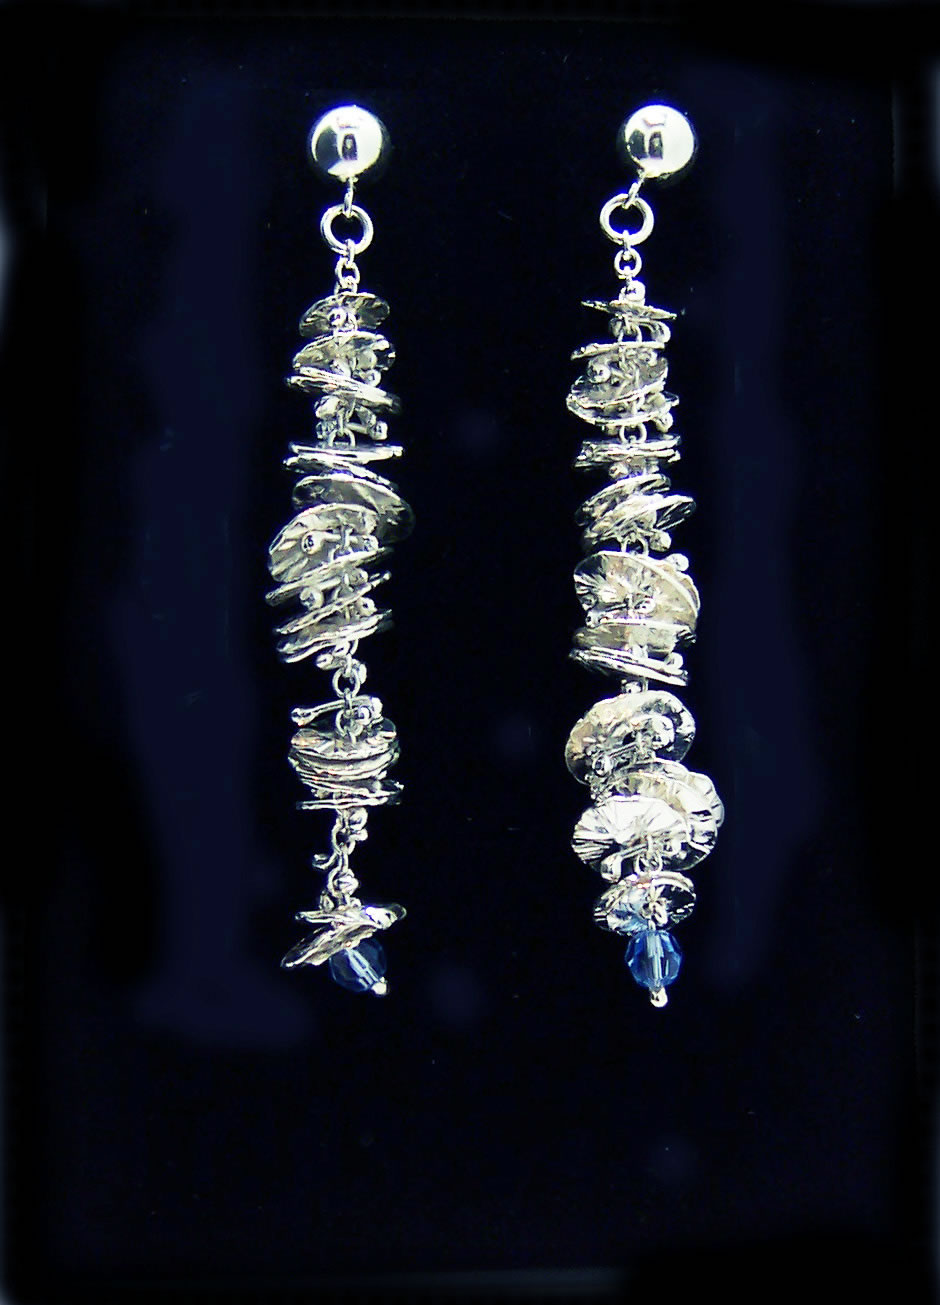 Silver Catkin Stud Earrings with Single Blue Bead